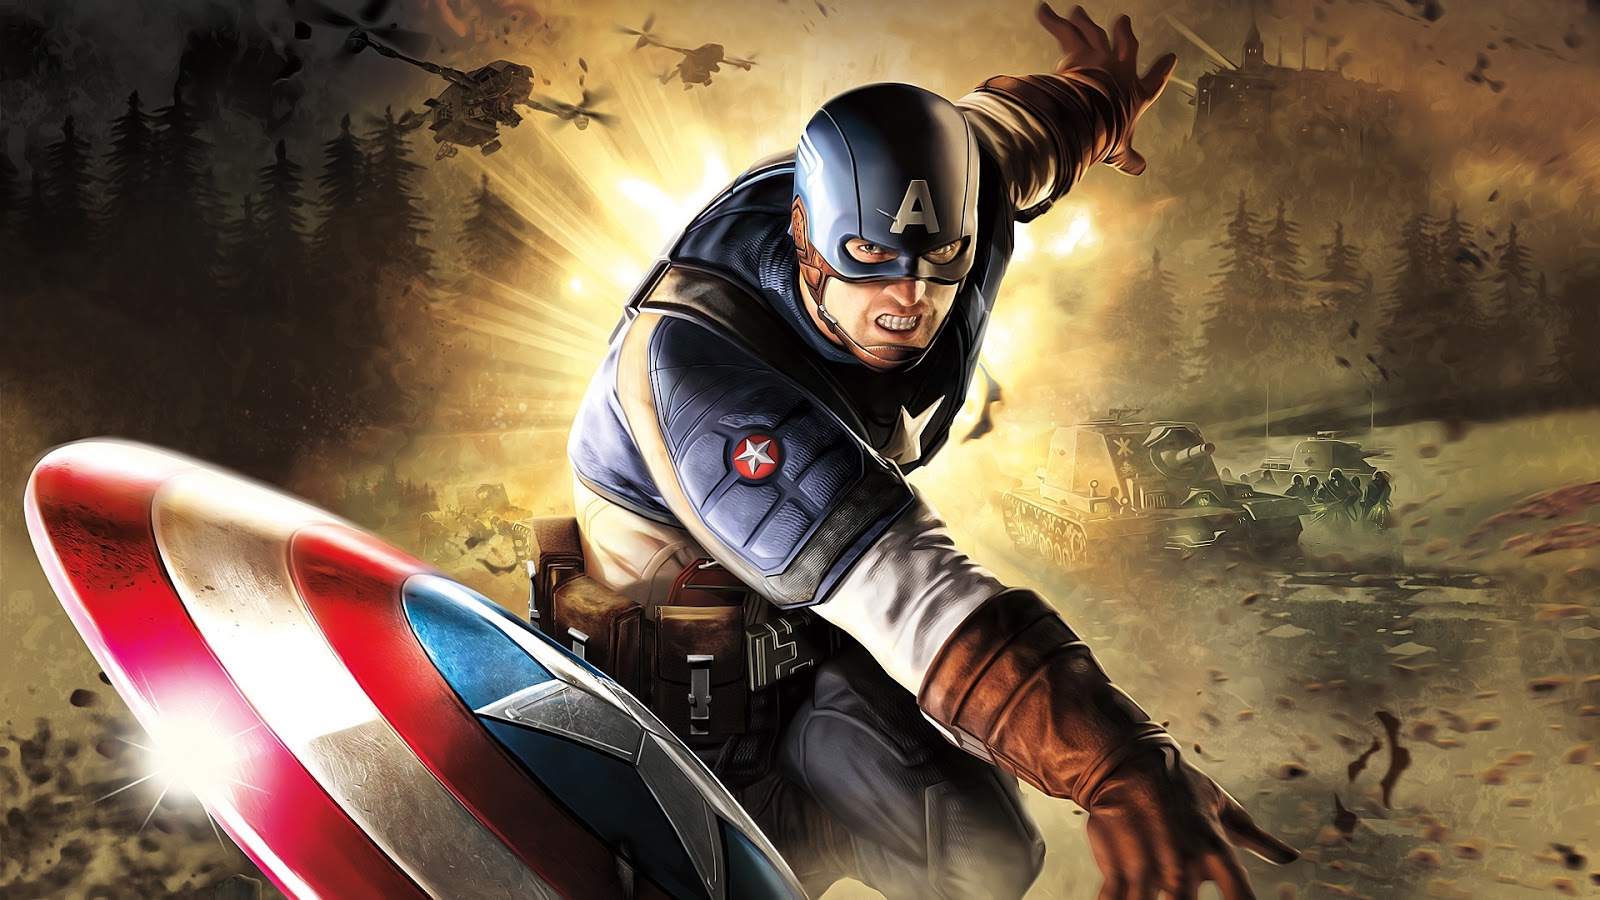 Captain America Civil War HD Desktop Wallpapers 30 Hd